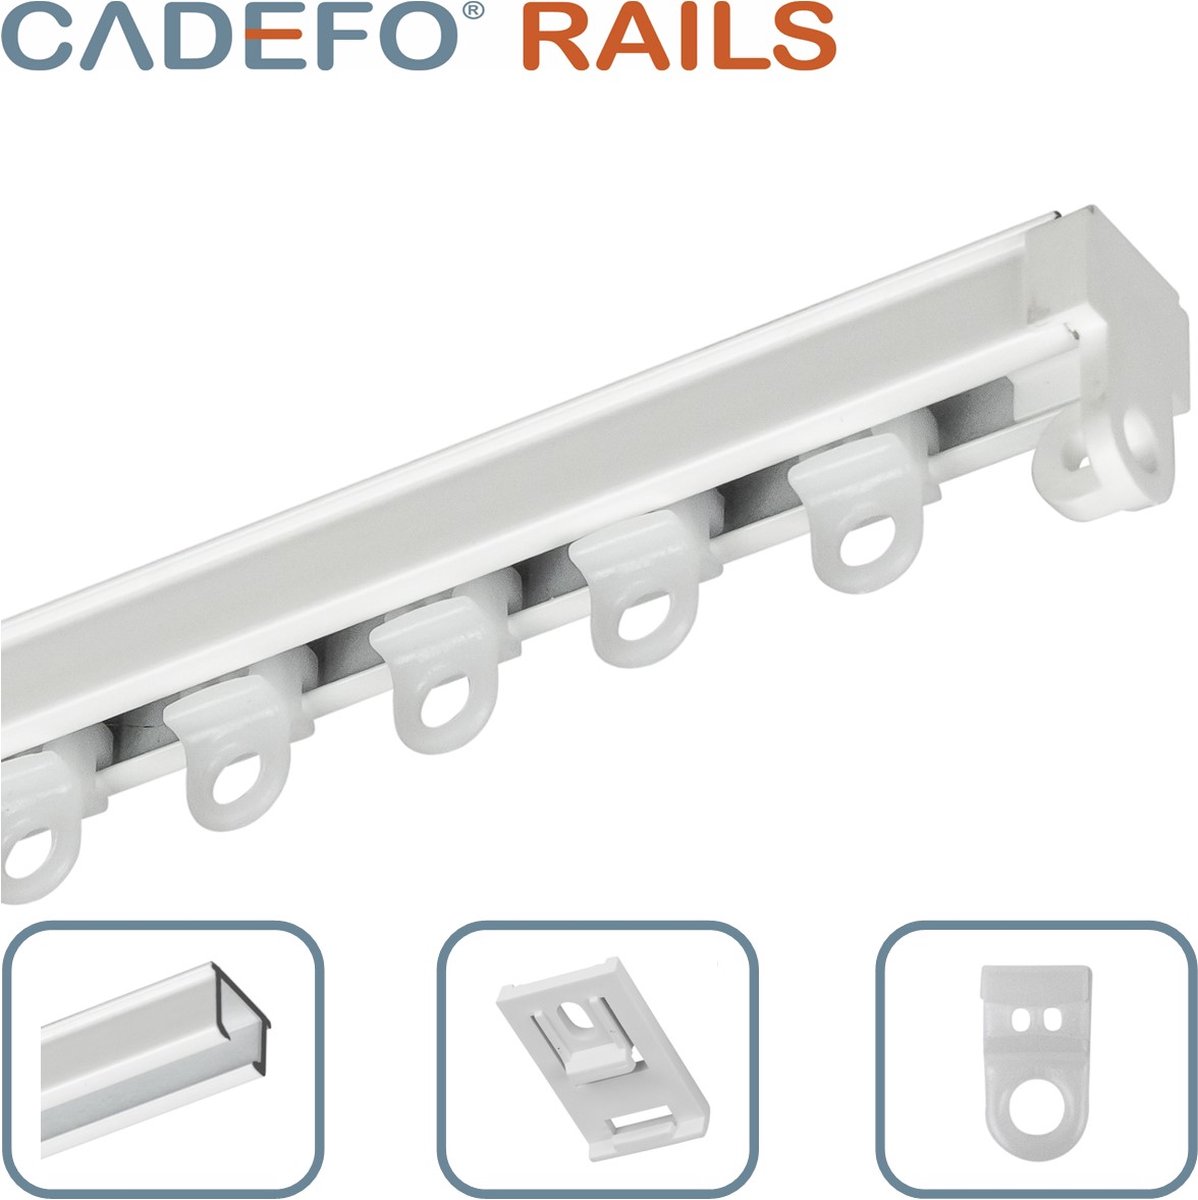 CADEFO RAILS (151 - 200 cm) Gordijnrails - Compleet op maat! - UIT 1 STUK - Leverbaar tot 6 meter - Plafondbevestiging - Lengte 157 cm